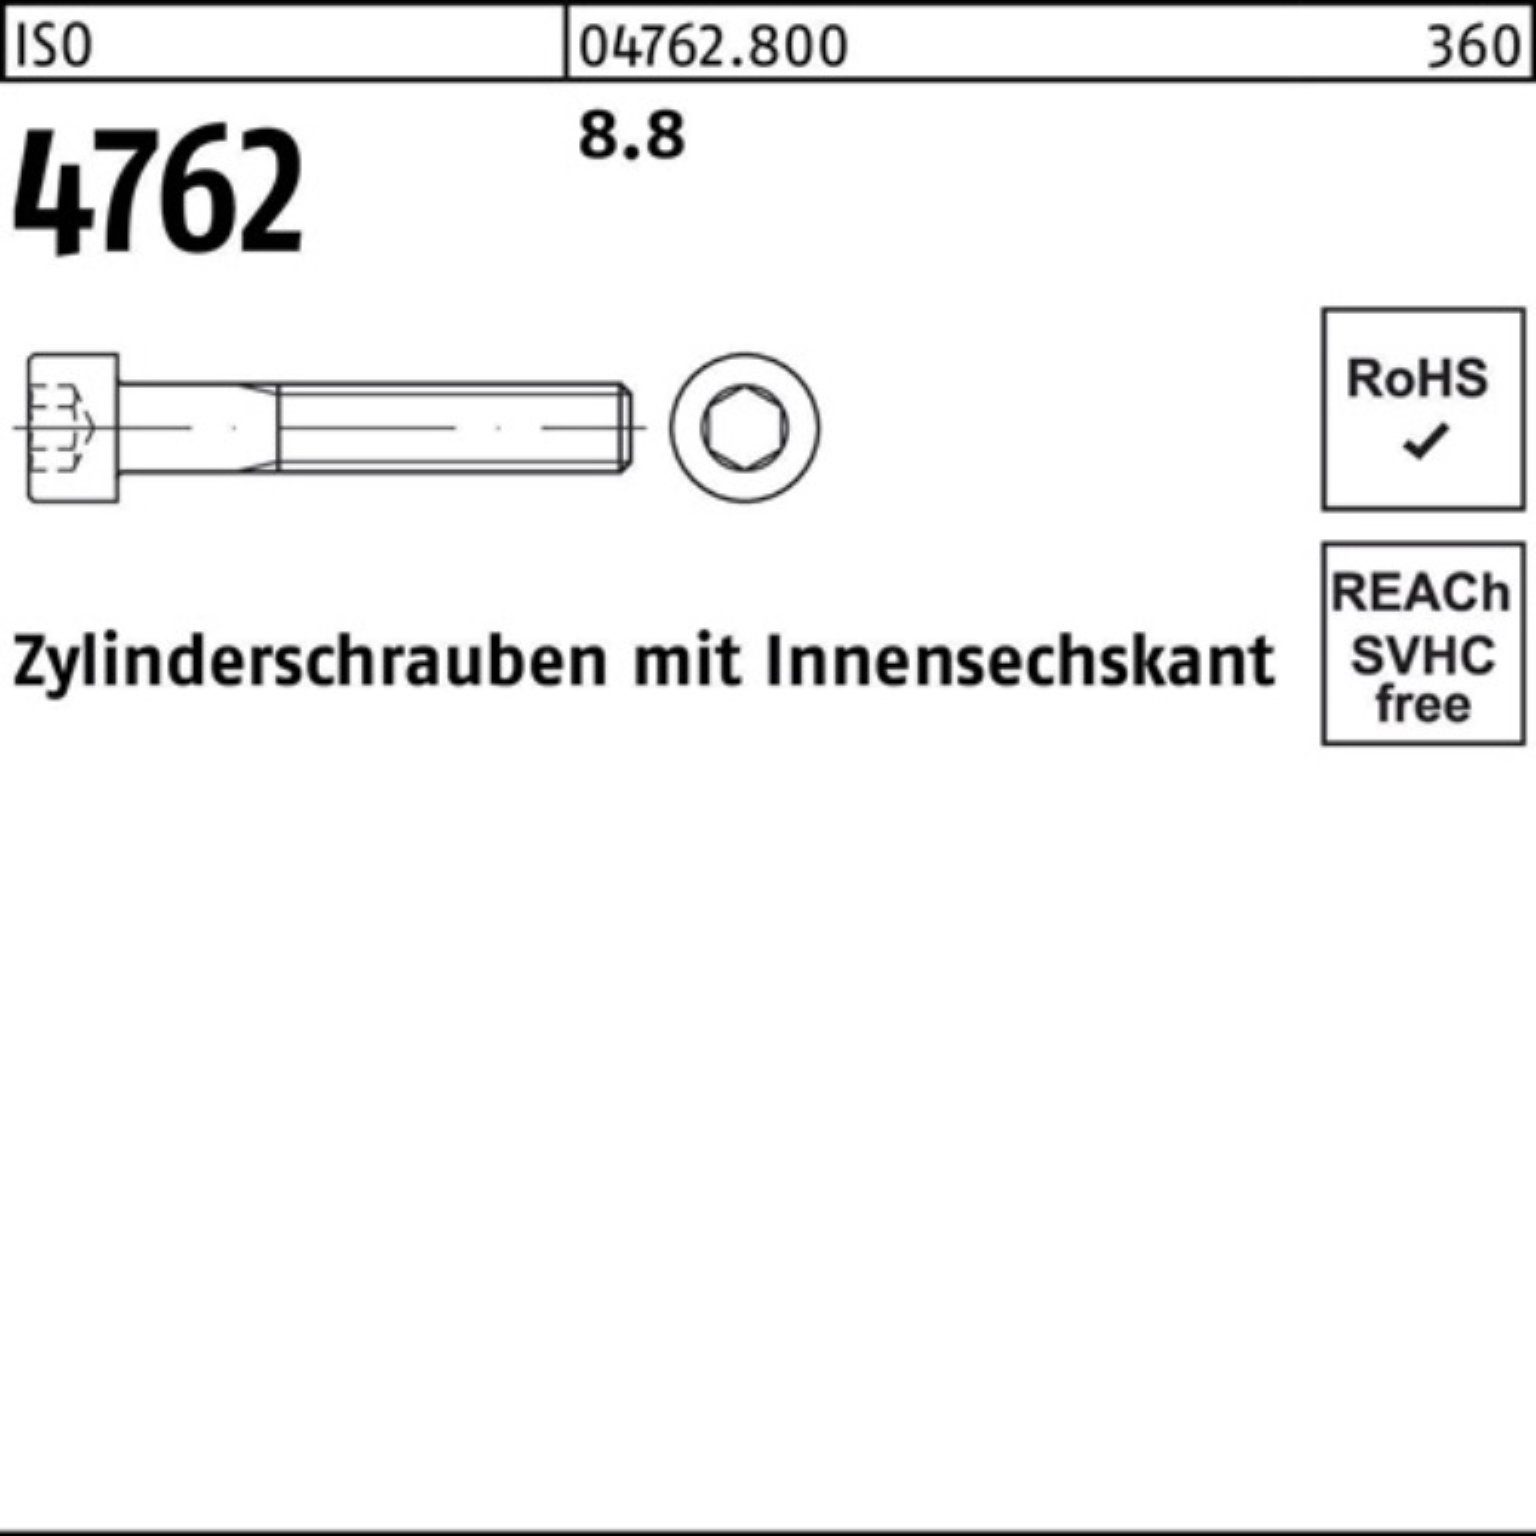 Innen-6kt 100er Zylinderschraube Reyher M24x I Zylinderschraube 390 1 4762 ISO 8.8 Pack Stück